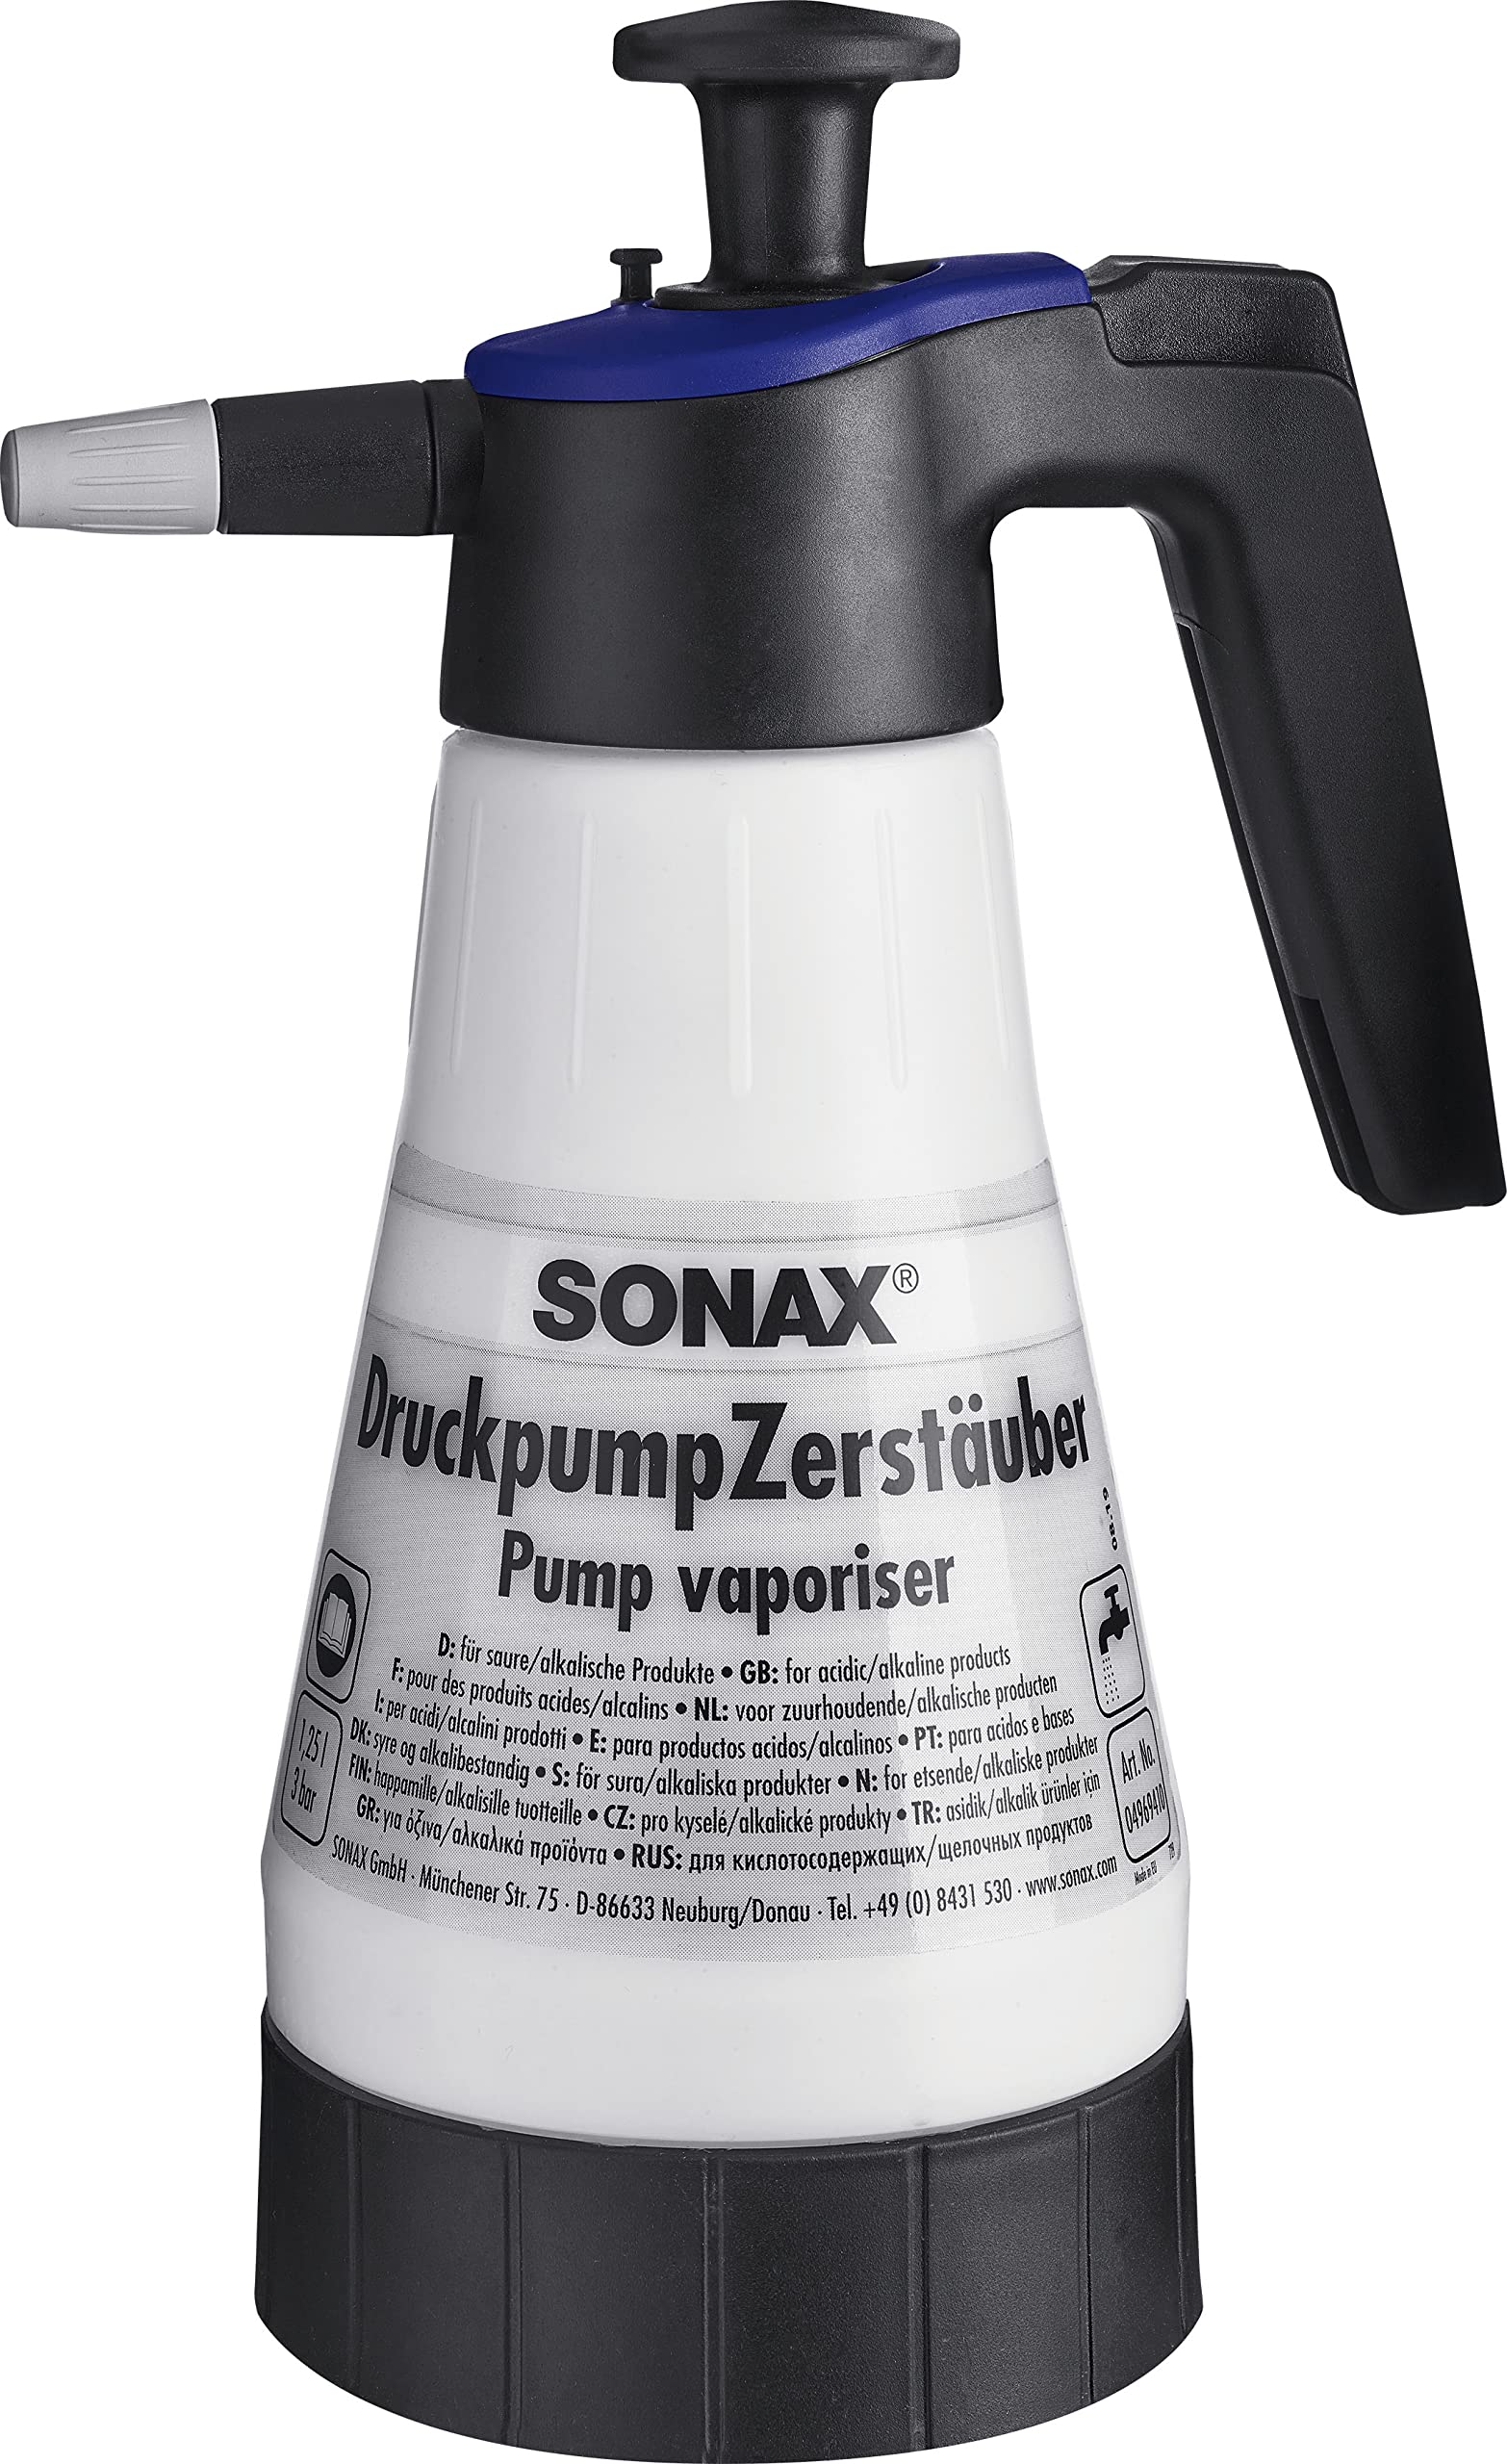 SONAX DruckpumpZerstäuber für saure/alkalische Produkte (1 Stück) zum bequemen Aufbringen von säure- und alkalienhaltigen Reinigungs- und Pflegemitteln | Art-Nr. 04969410 von SONAX